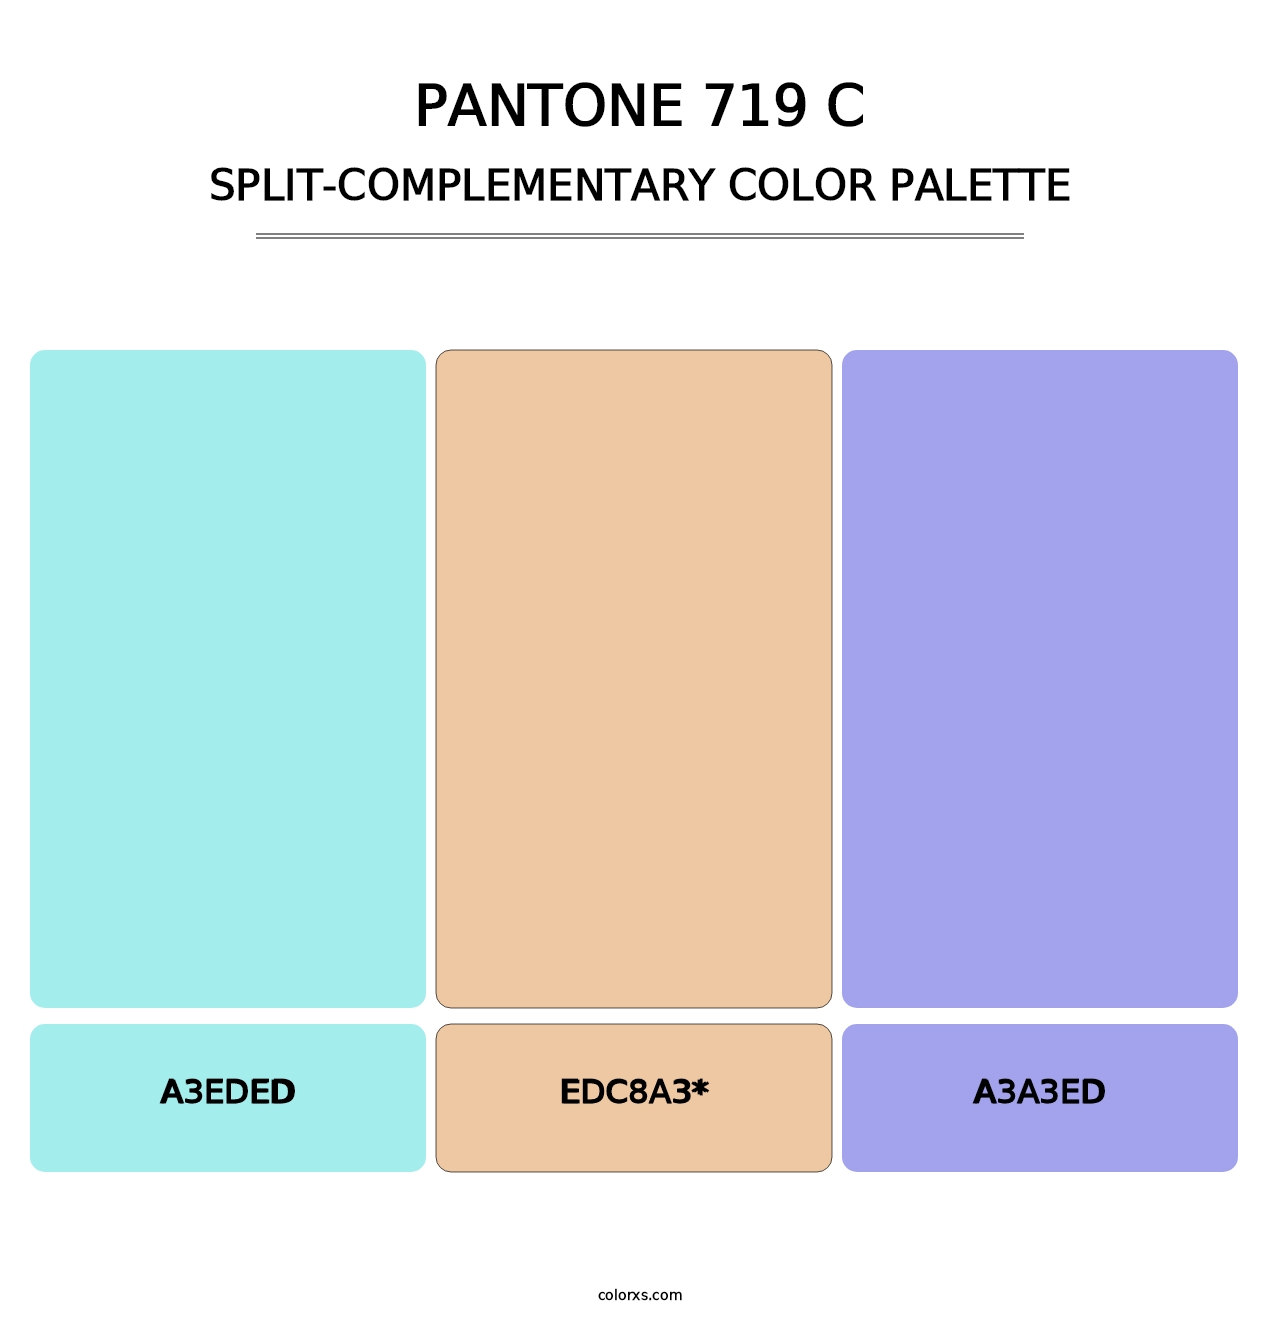 PANTONE 719 C - Split-Complementary Color Palette